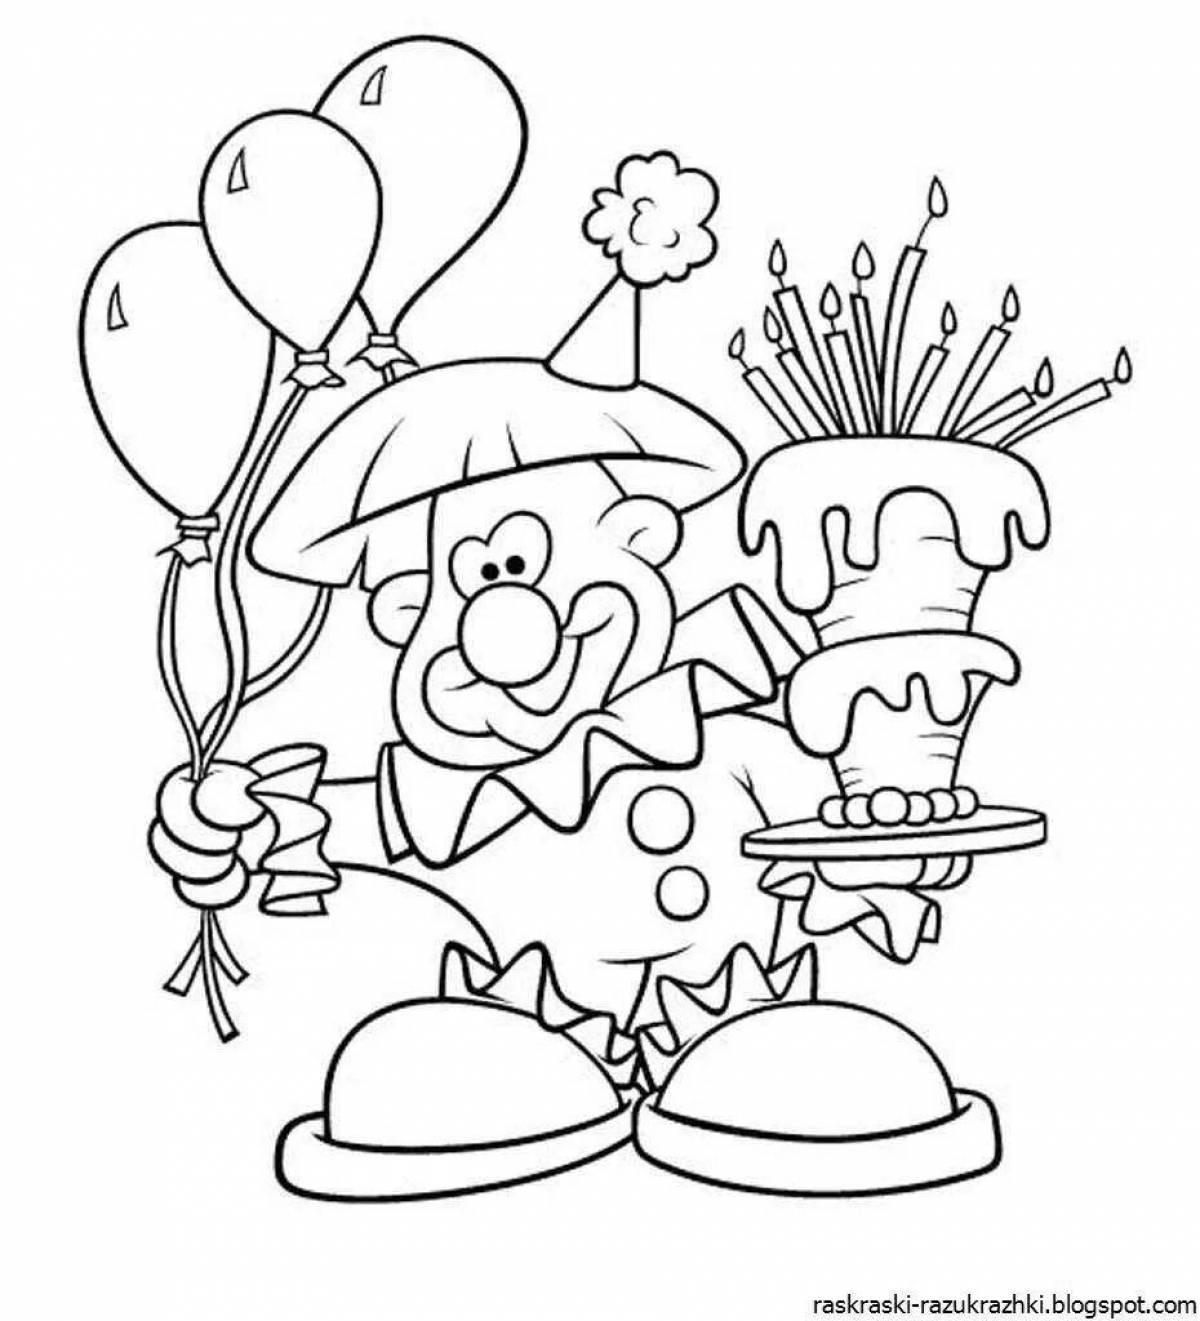 Поздравления с днем раскраска. Раскраска "с днем рождения!". День рождения ИА раскраски. С днем рождения раскраска для детей. Раскраски надкень рождения.